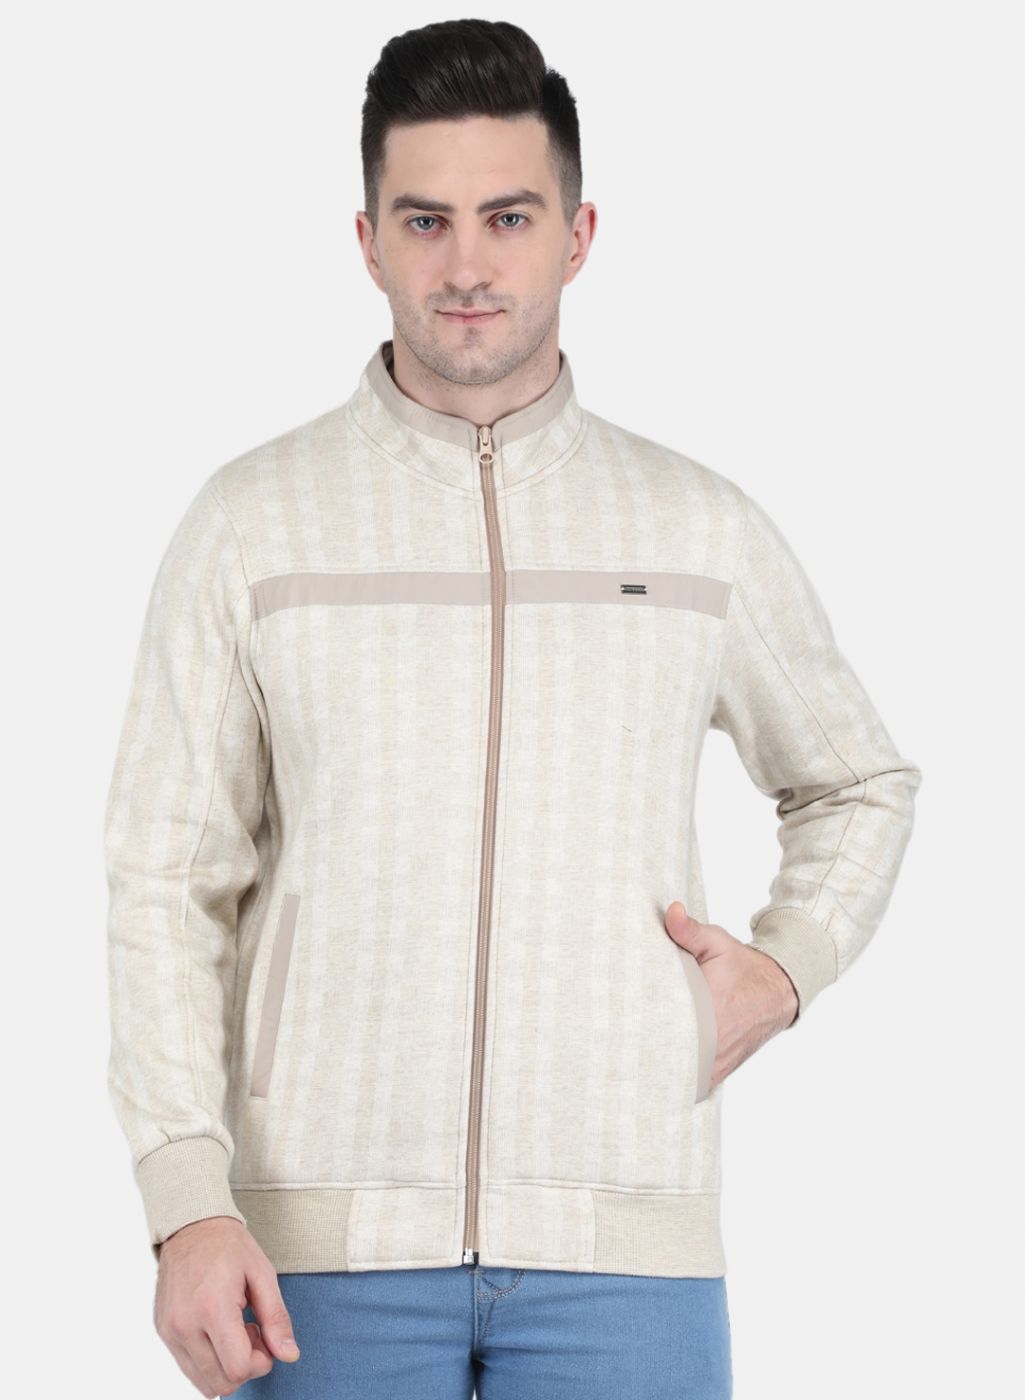 Men Grey Self Design Sweatshirt